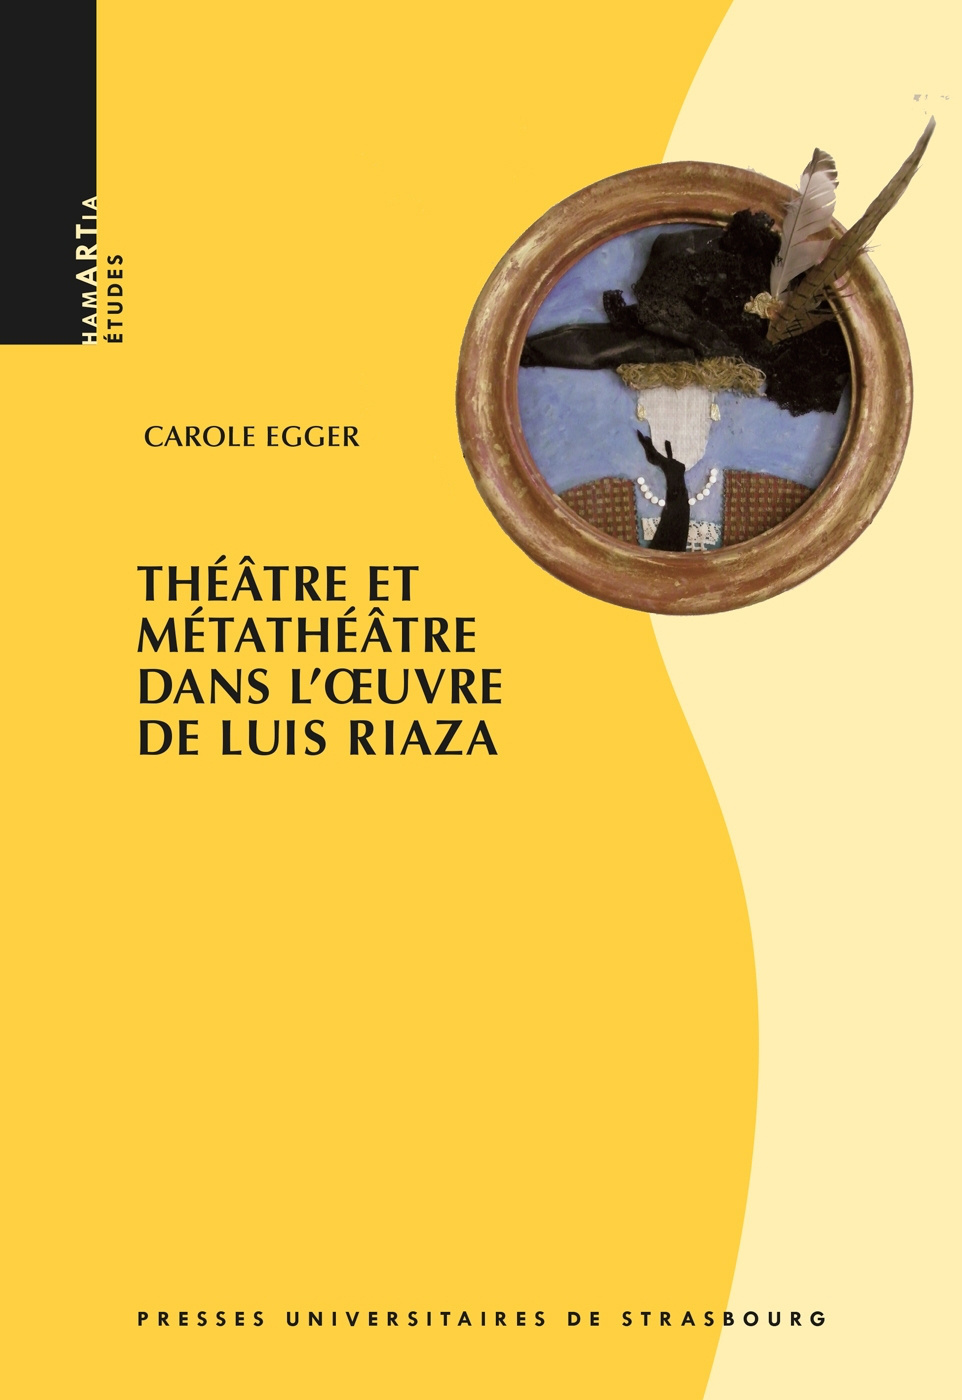 Théâtre et Métathéâtre dans l'œuvre de Luis Riaza